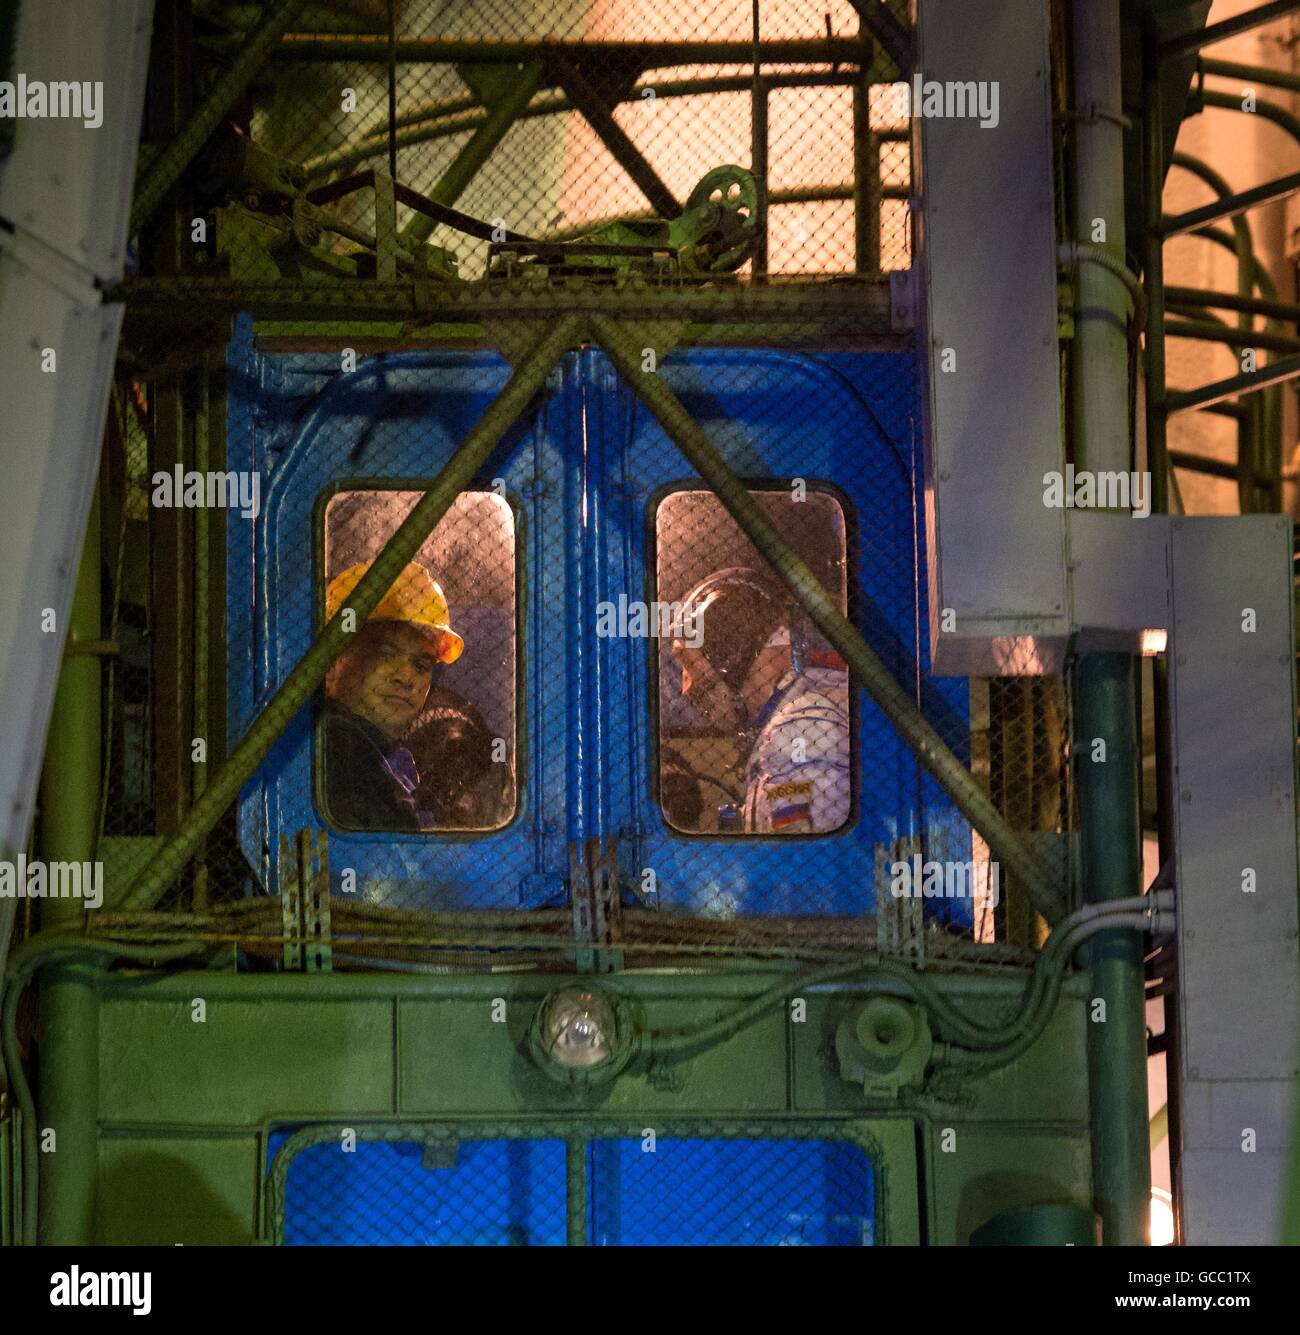 Stazione Spaziale Internazionale Expedition 48 membri di equipaggio ride il launch pad ascensore alla Soyuz MS-01 navicella spaziale in preparazione per il lancio Luglio 7, 2016 presso il cosmodromo di Baikonur in Kazakistan. I membri dell'equipaggio astronauta americano Kate Rubins, cosmonauta russo Anatoly Ivanishin e astronauta giapponese Takuya Onishi partì su quattro mesi di missione. Foto Stock